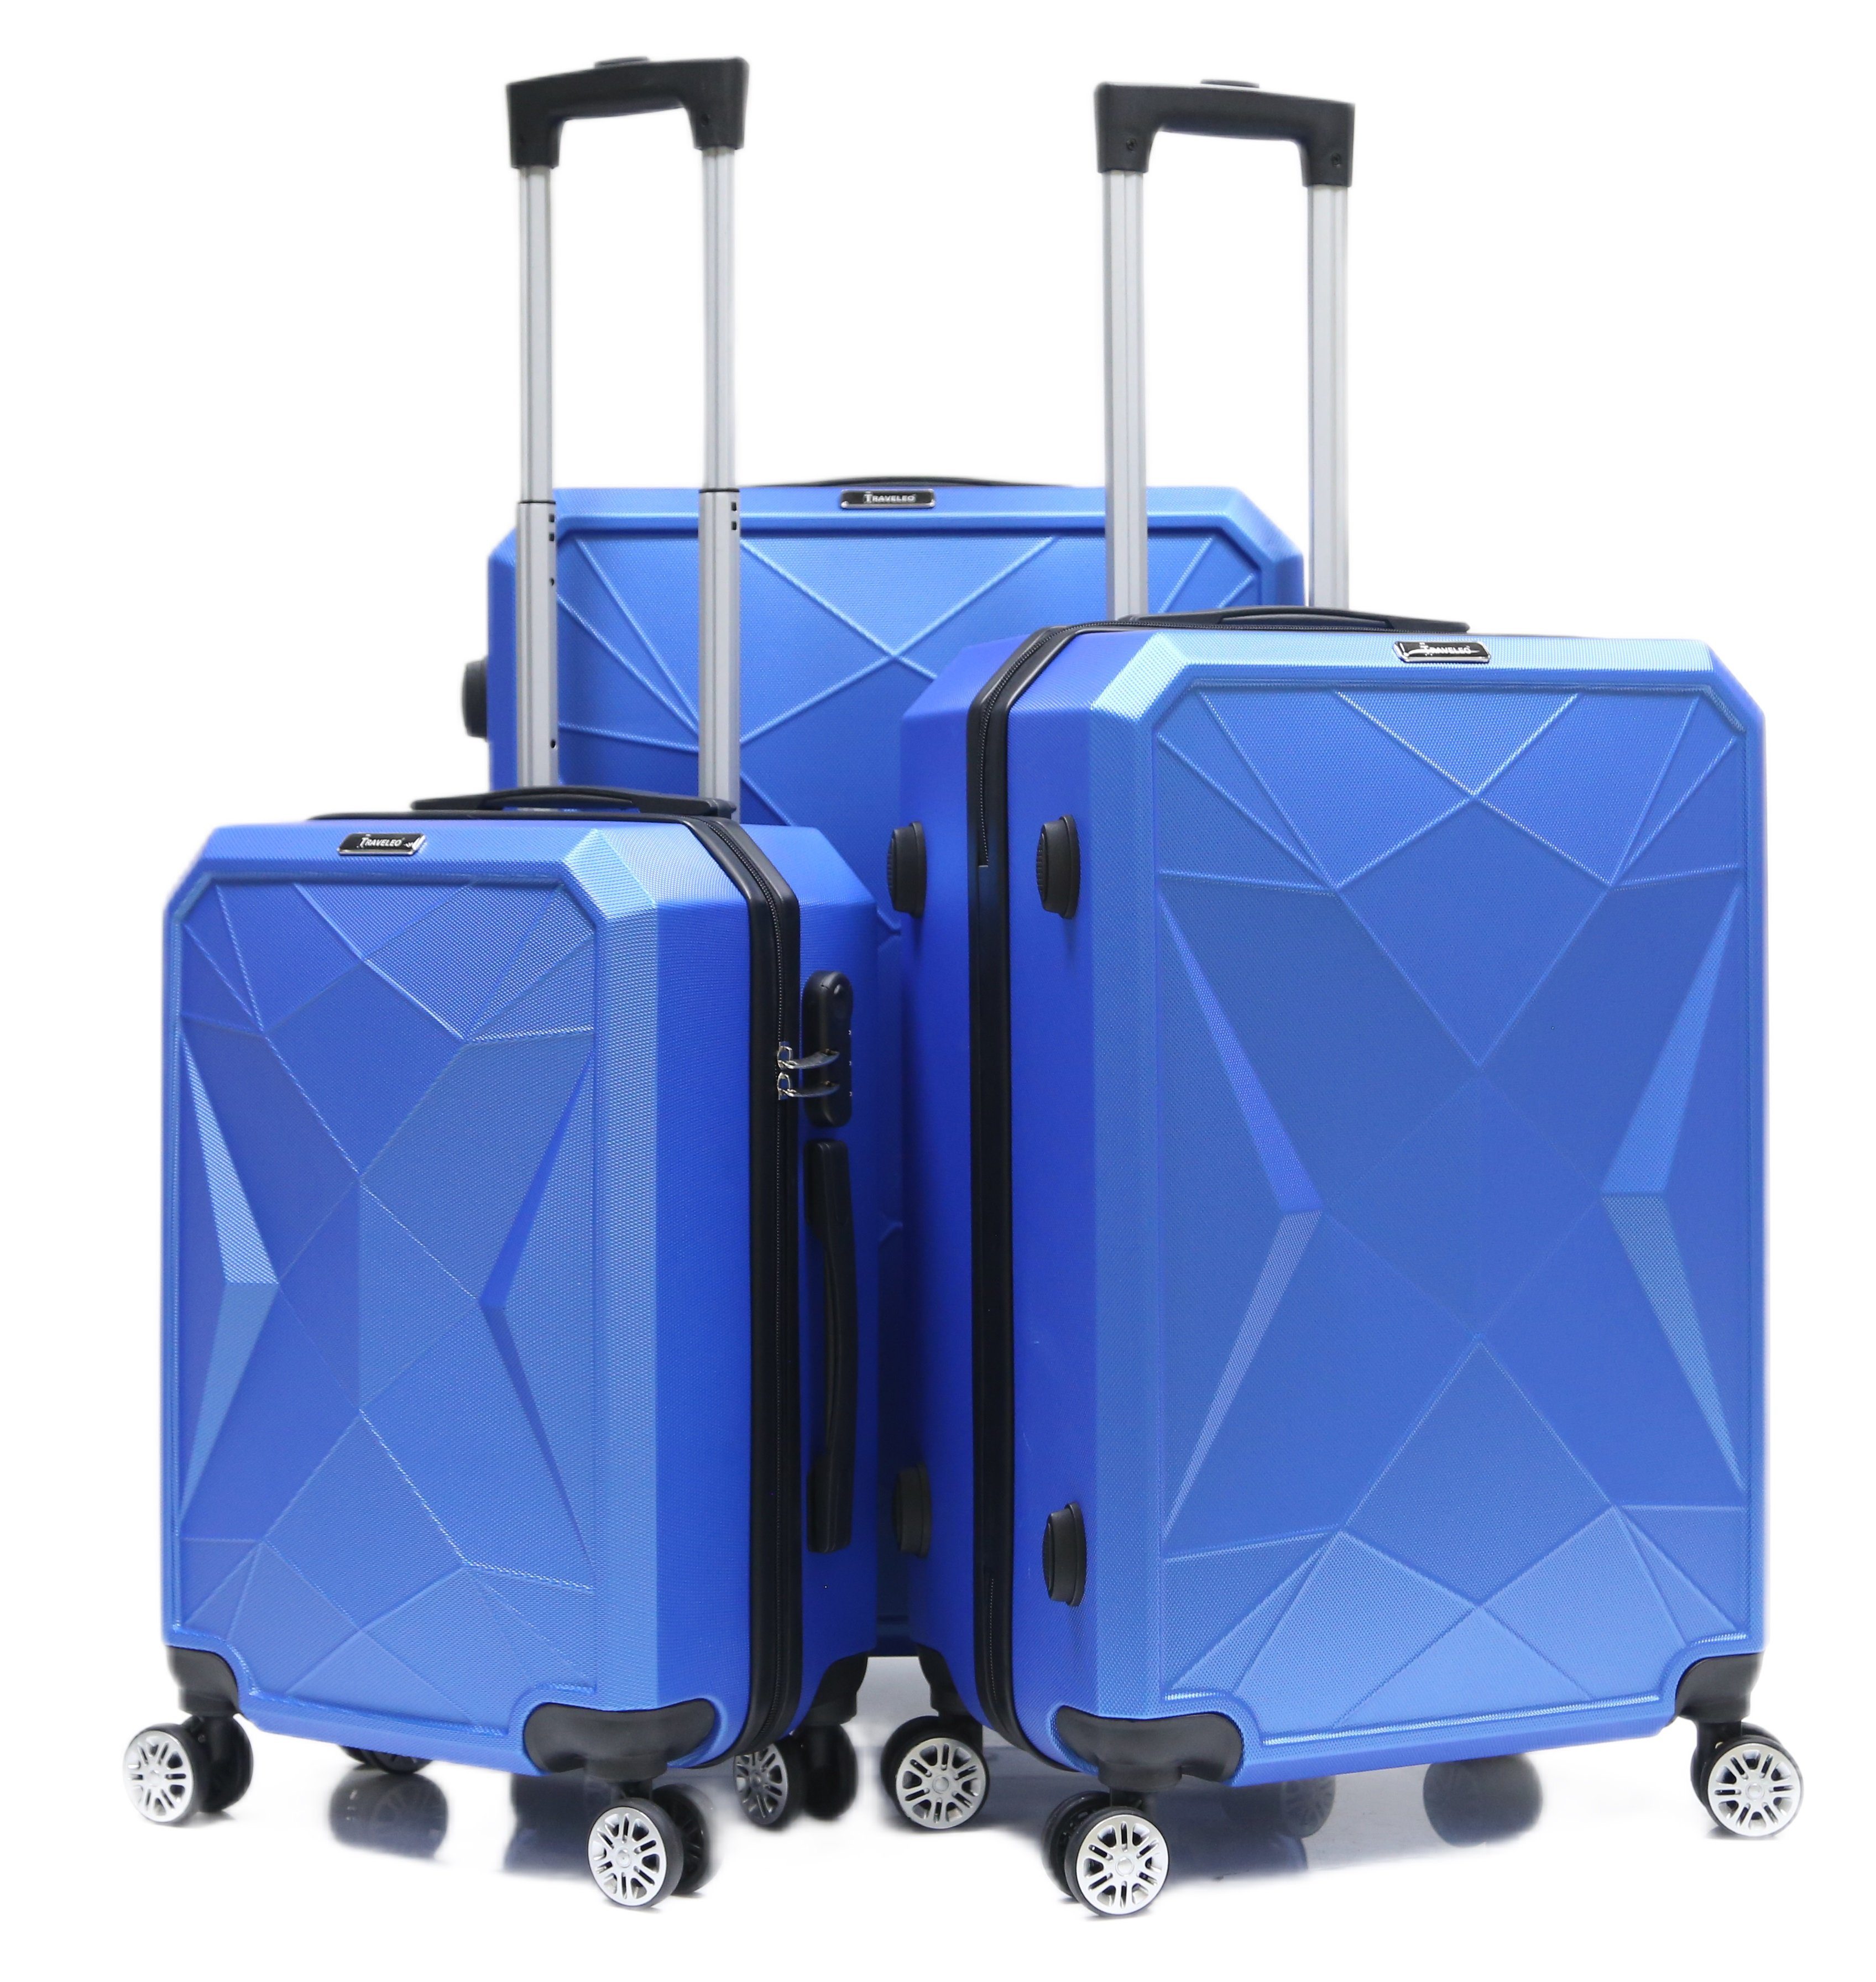 Cheffinger Kofferset Reisekoffer ABS-03 Koffer Trolley Set (3 4 3-teilig Rollen, Kofferset, Blau tlg) Hartschale